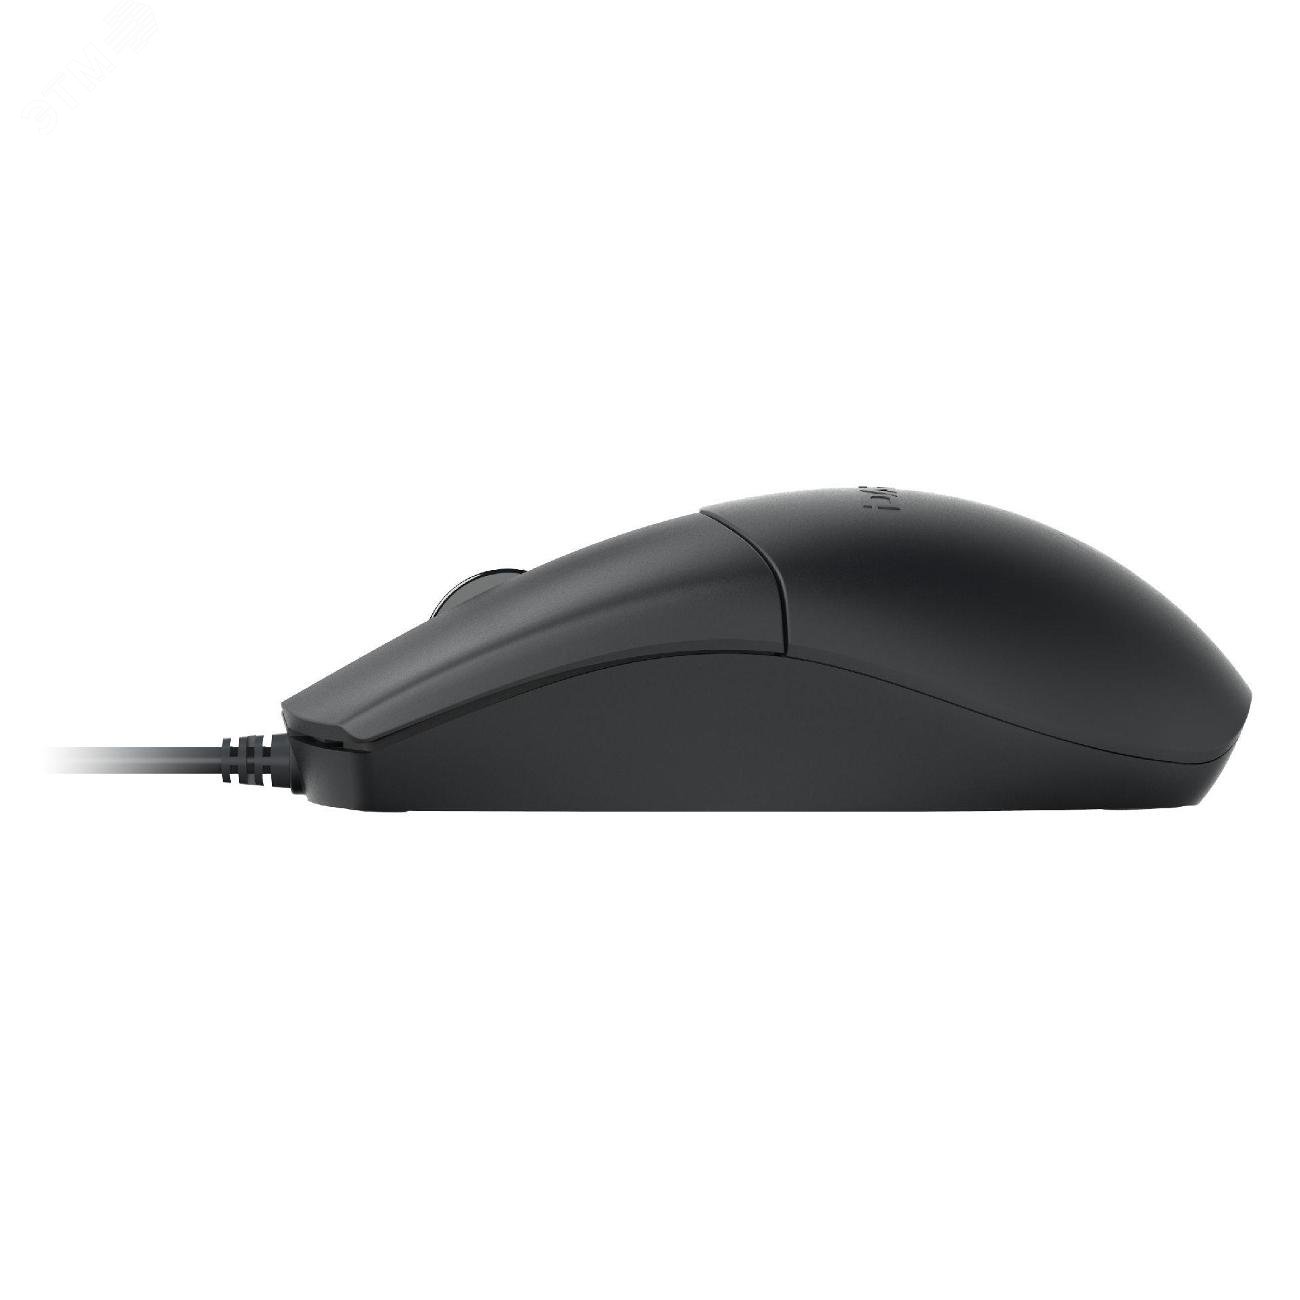 Комплект клавиатура + мышь проводной, USB черный MK185 Black Dareu - превью 4